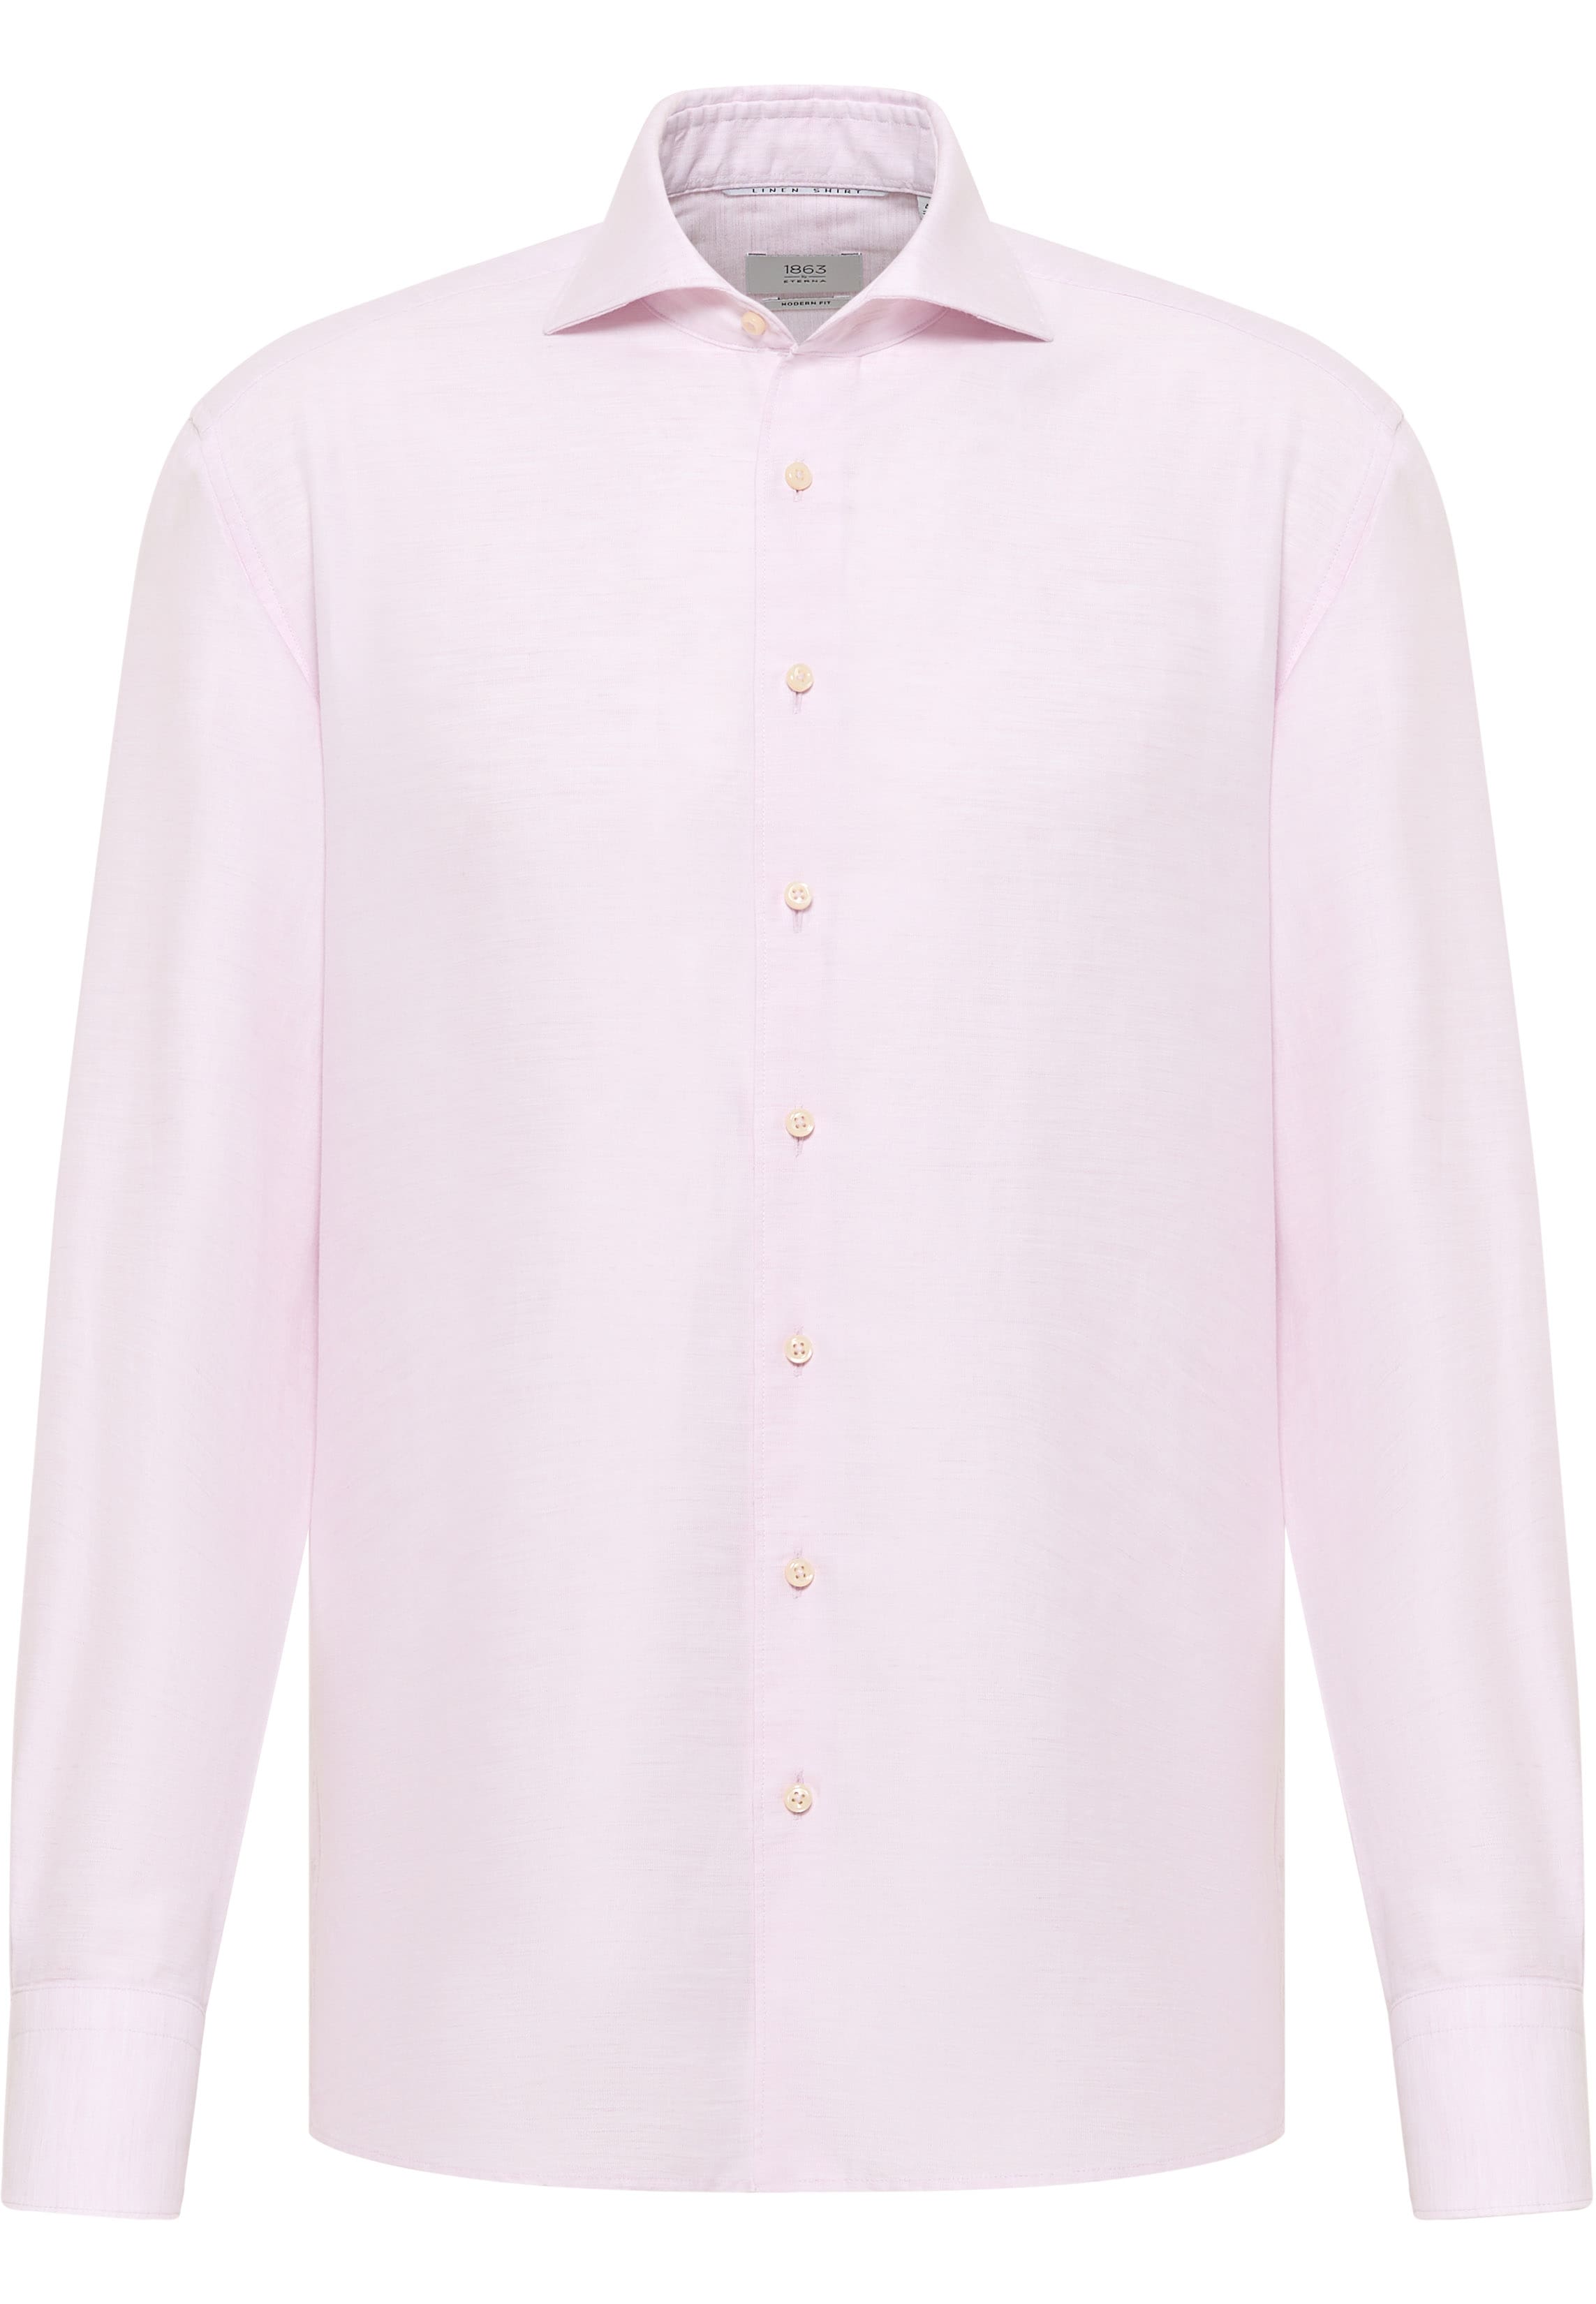 MODERN FIT Linen Shirt in rose plain